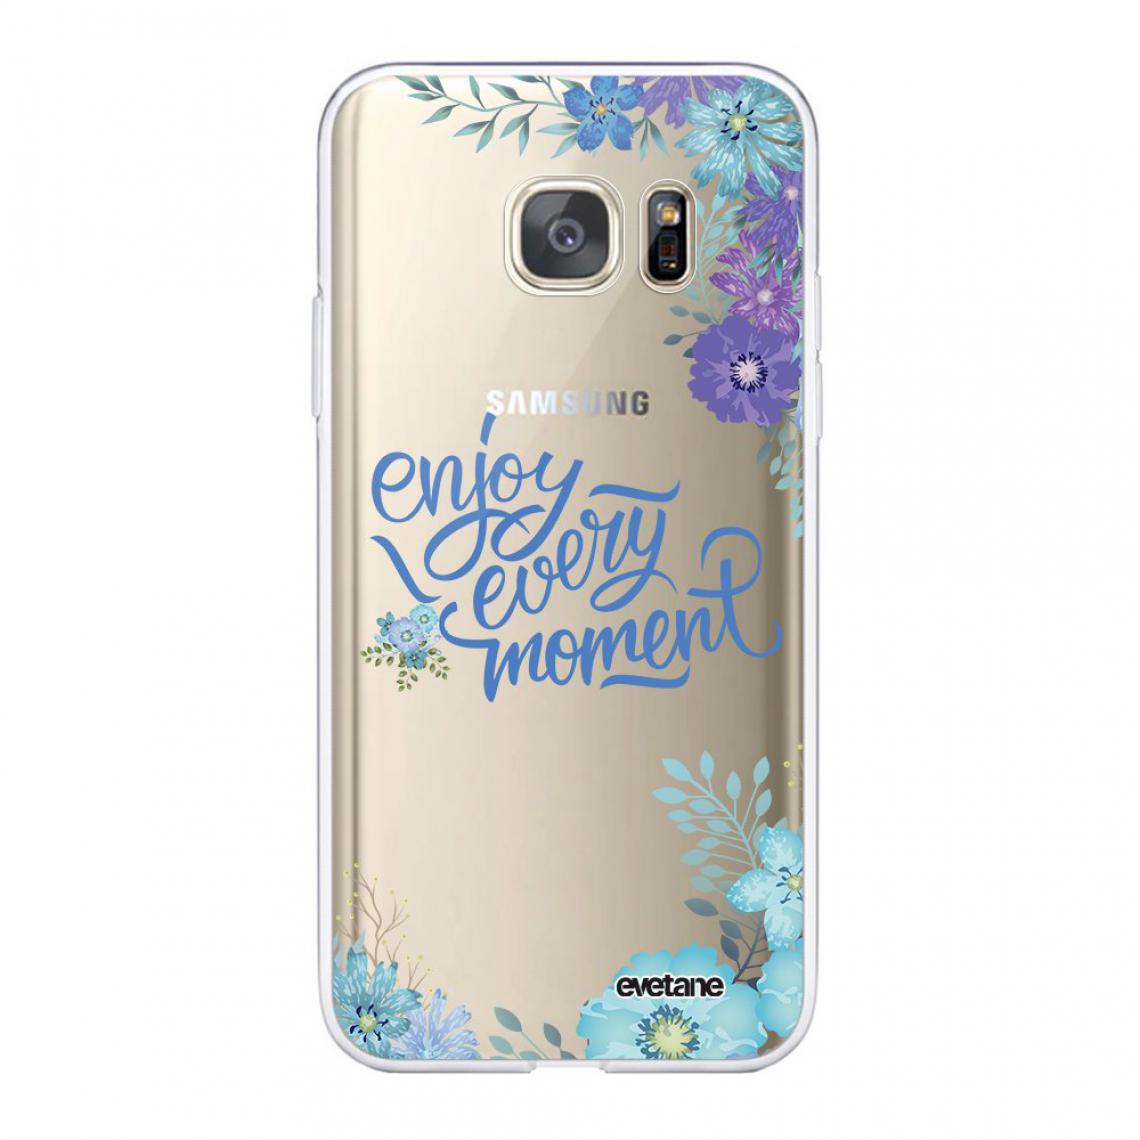 Evetane - Coque Samsung Galaxy S7 souple silicone transparente - Coque, étui smartphone